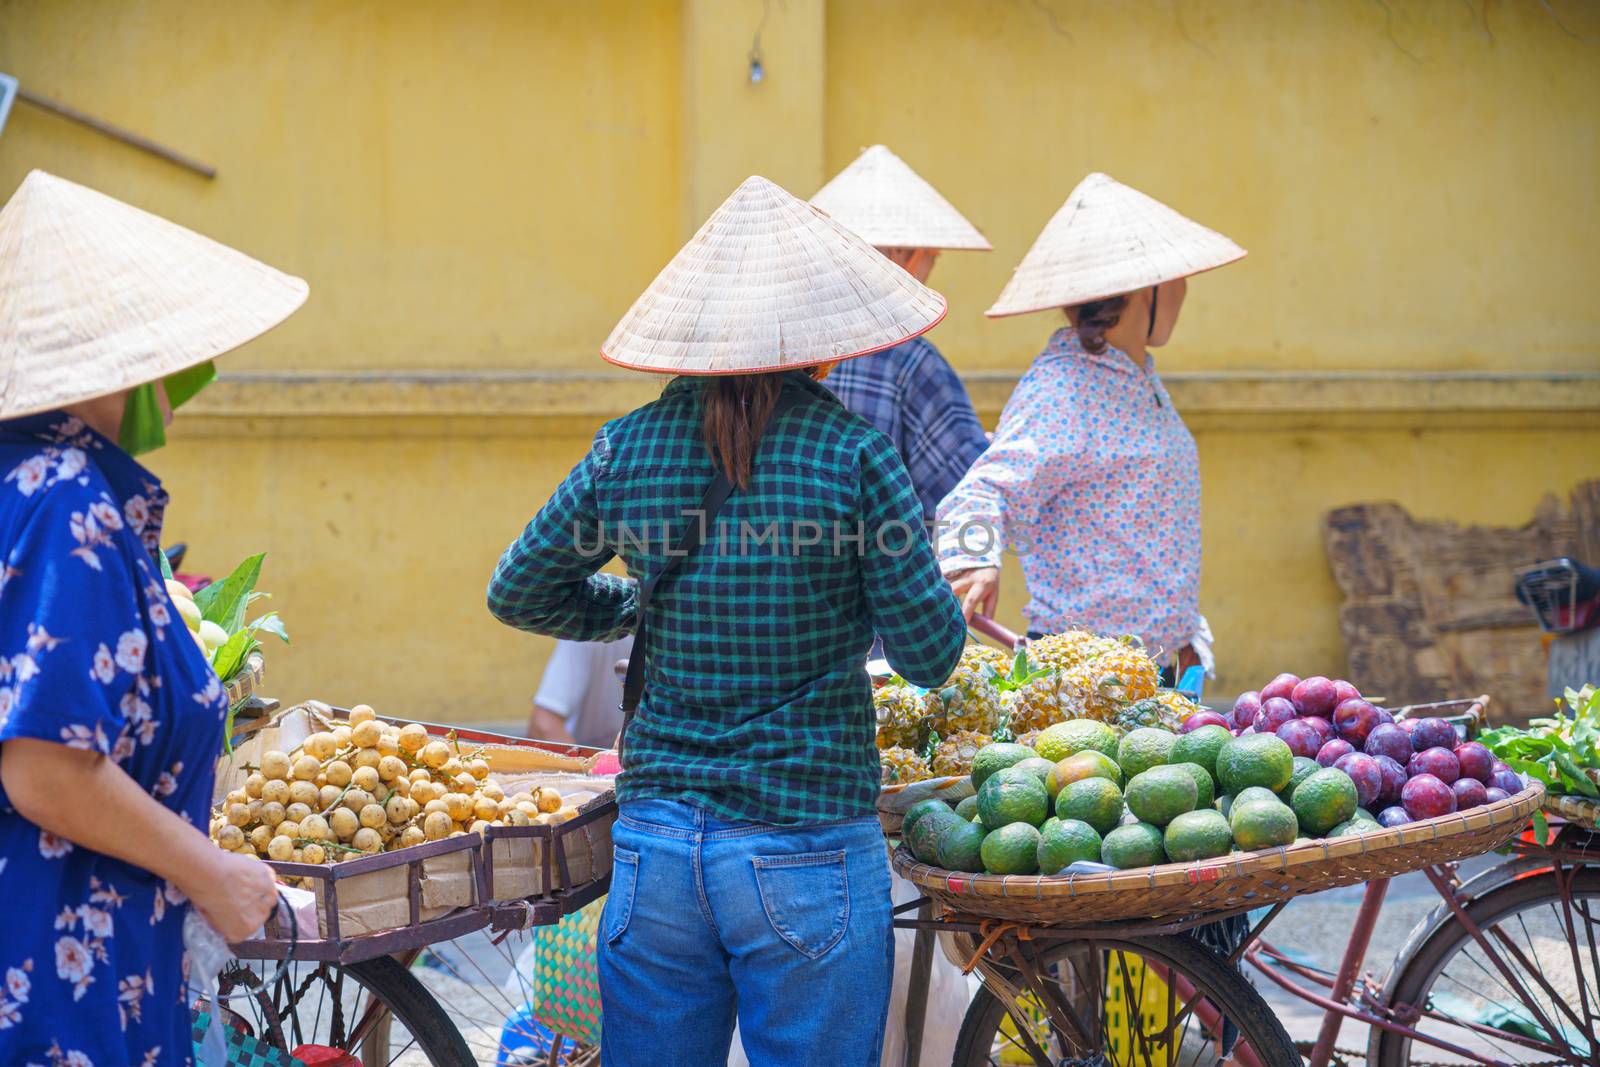 Back view of Women, Female street vendor in fruit, flowers market on the bike and street in VIETNAM HANOI